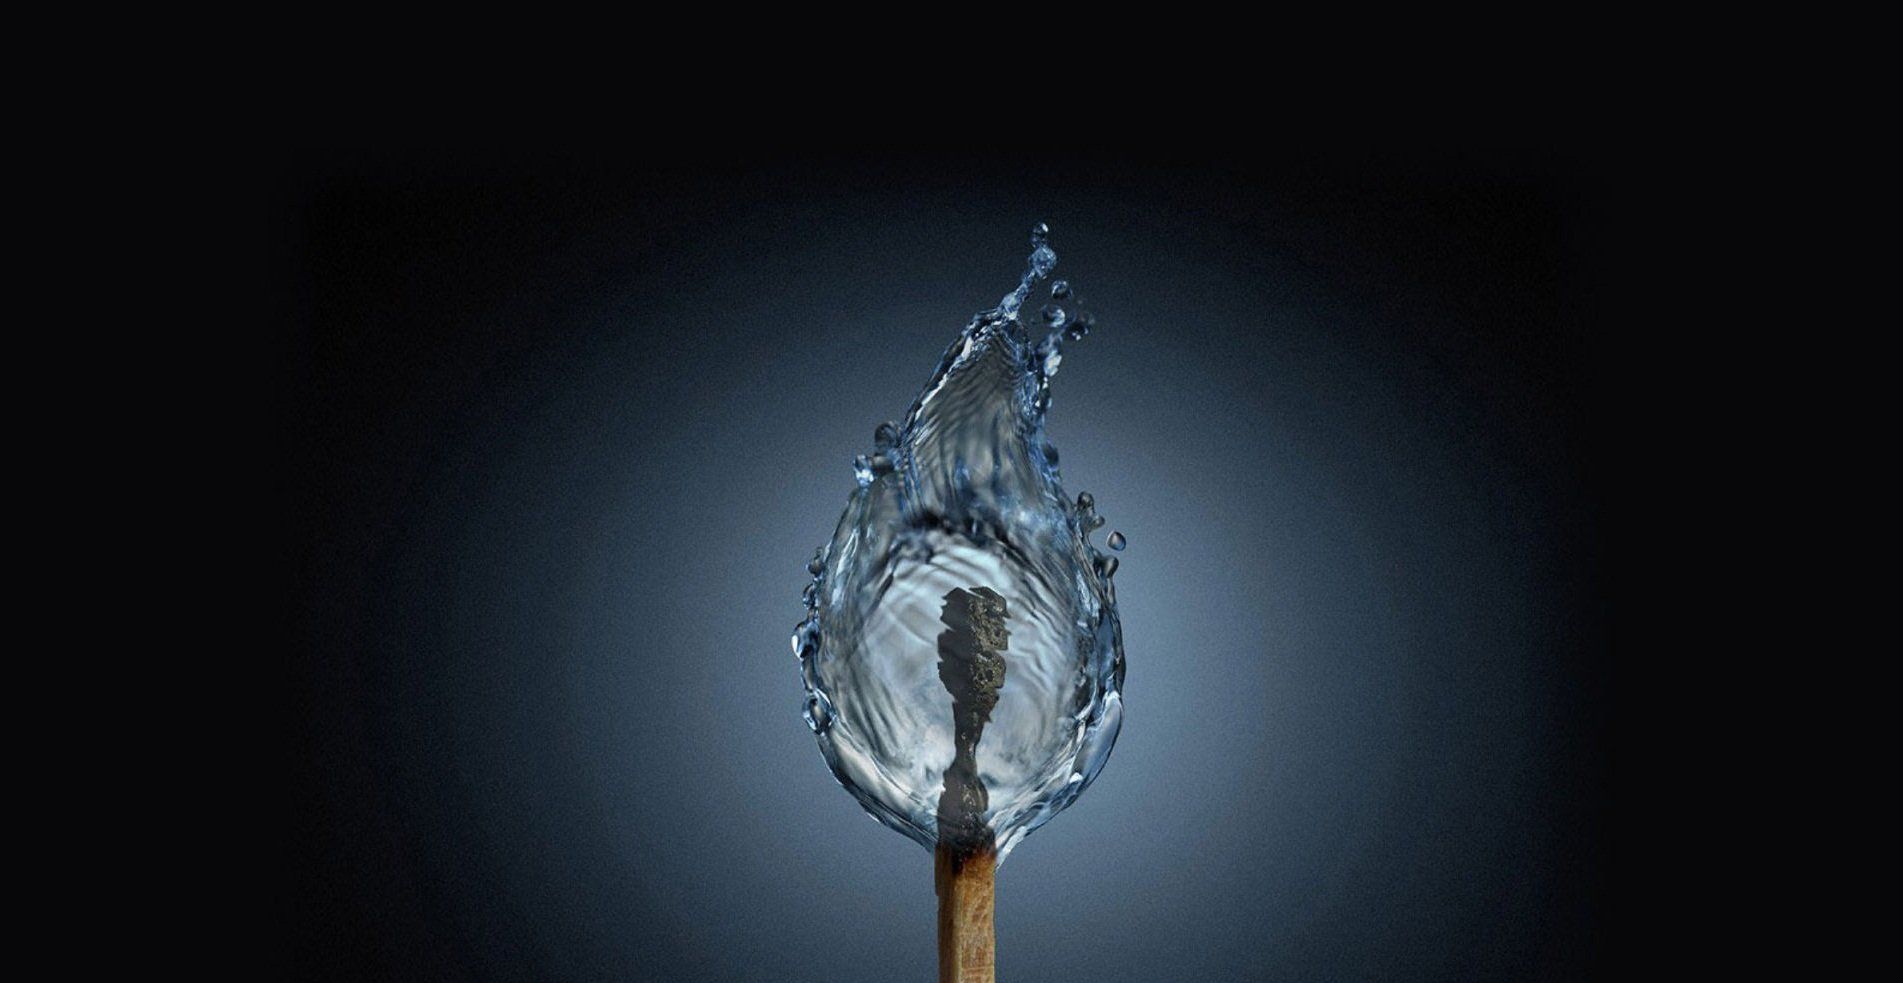 تصویر معجزه رشته شیمی از یخ بستن آتش کبریت 1402